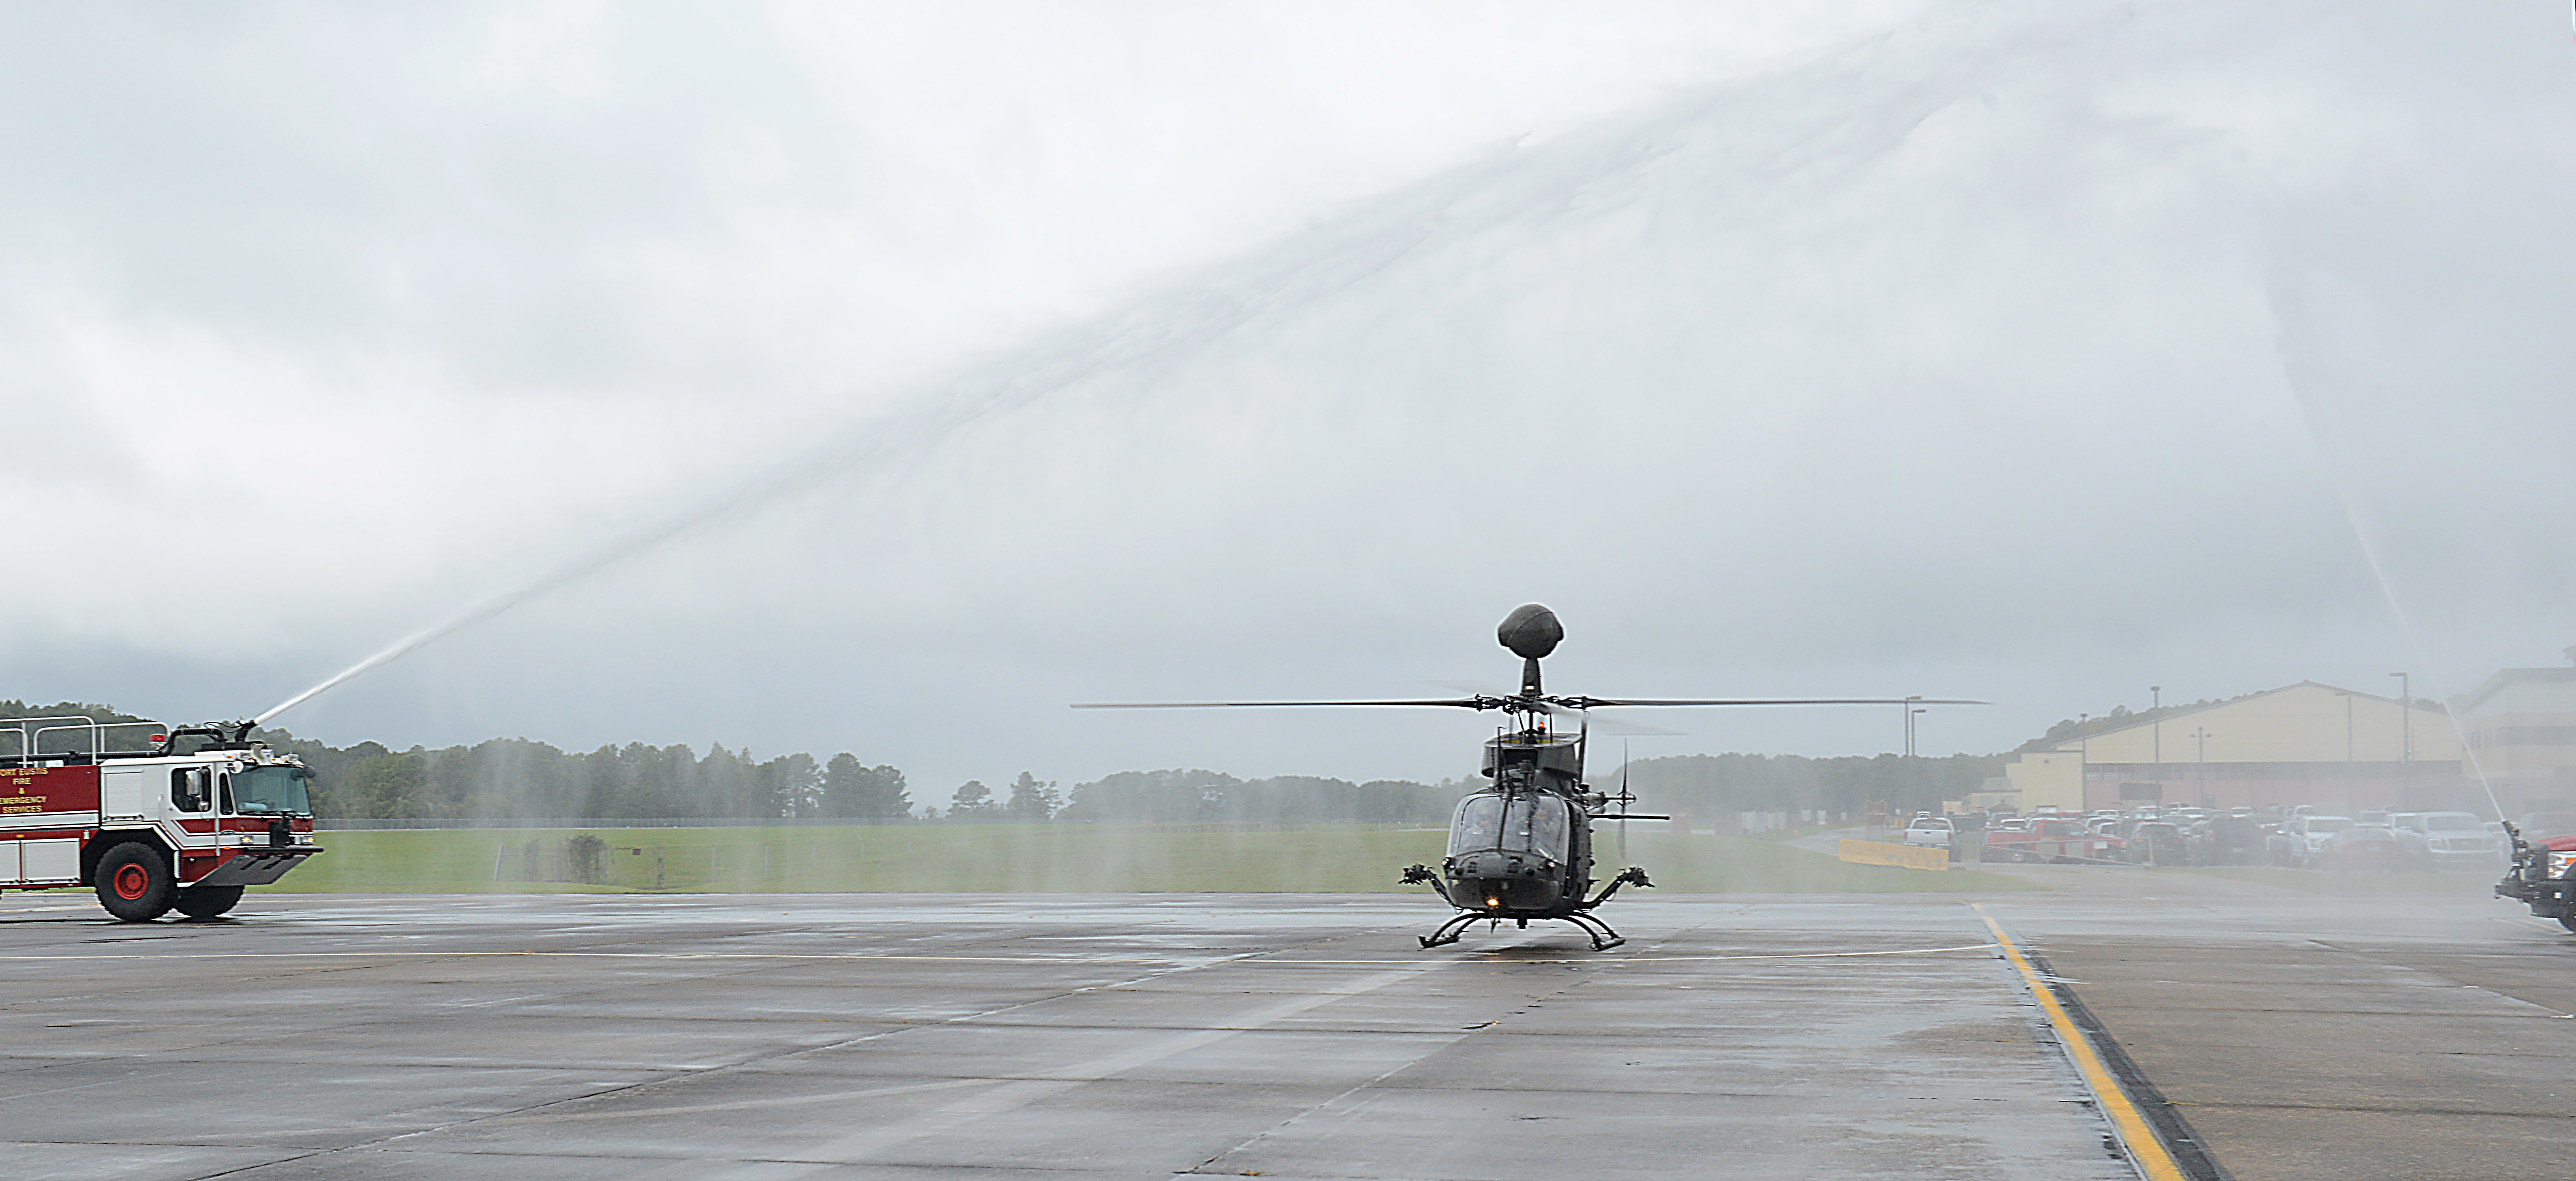 OH 58D Kiowa Warrior Takes Final Flight